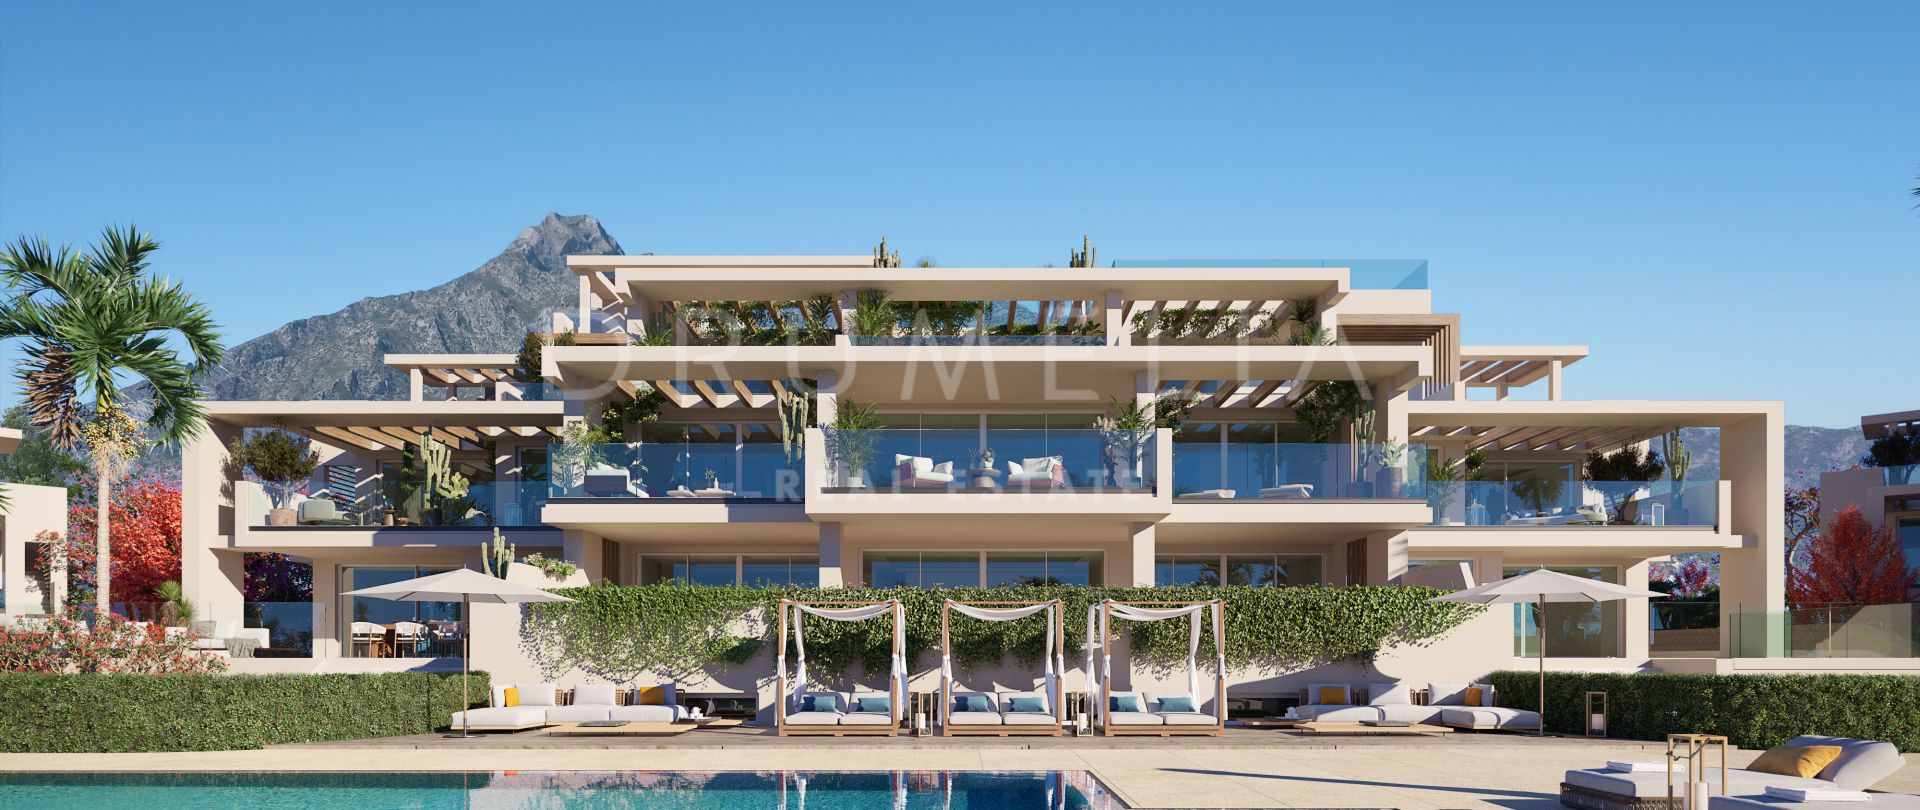 Nuevo y lujoso ático dúplex moderno con piscina privada y vistas impresionantes, Milla de Oro de Marbella